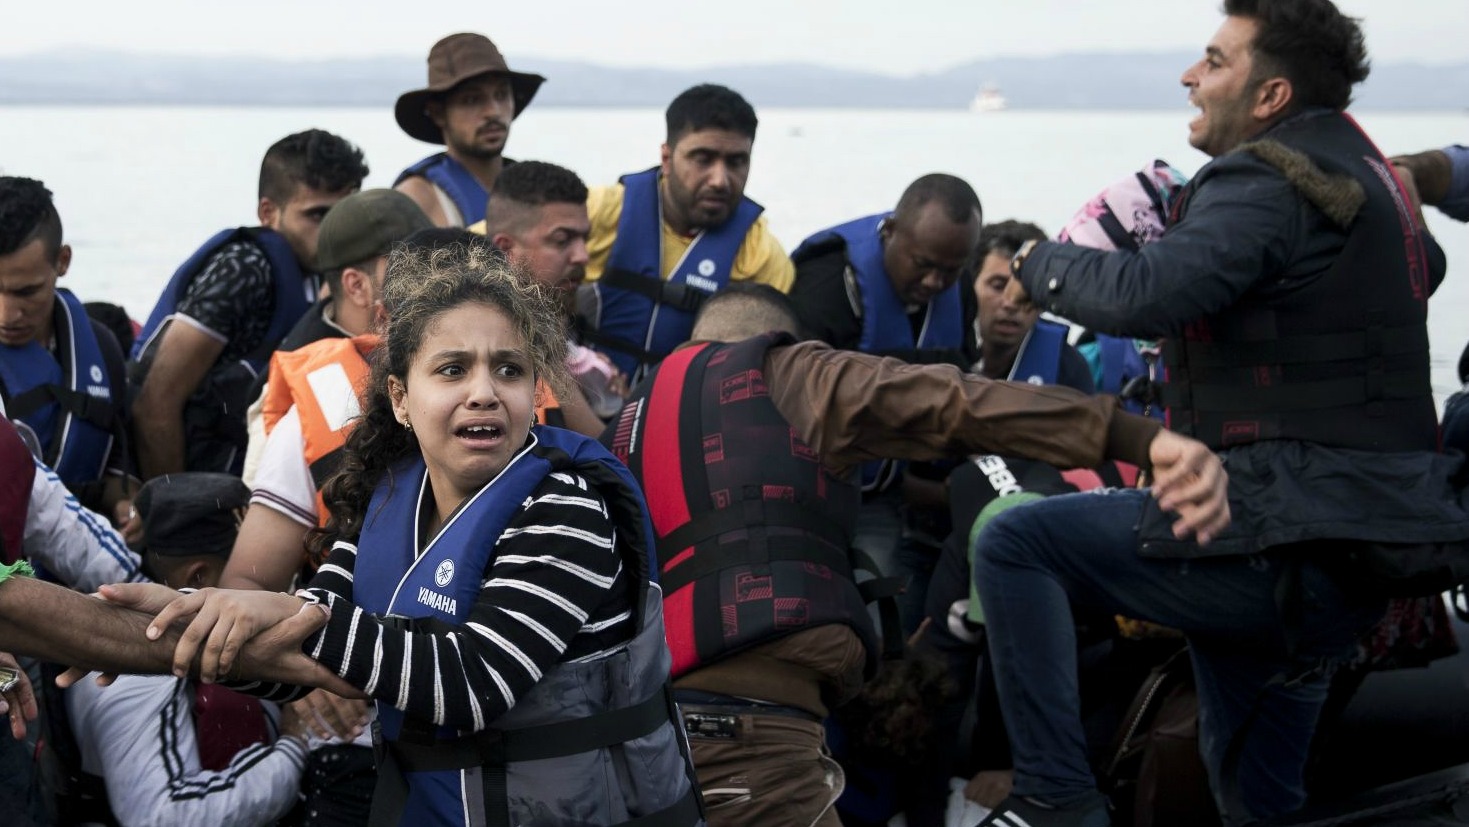 De nombreux réfugiés arrivant en Europe sont des mineurs (Photo: Freedom House)